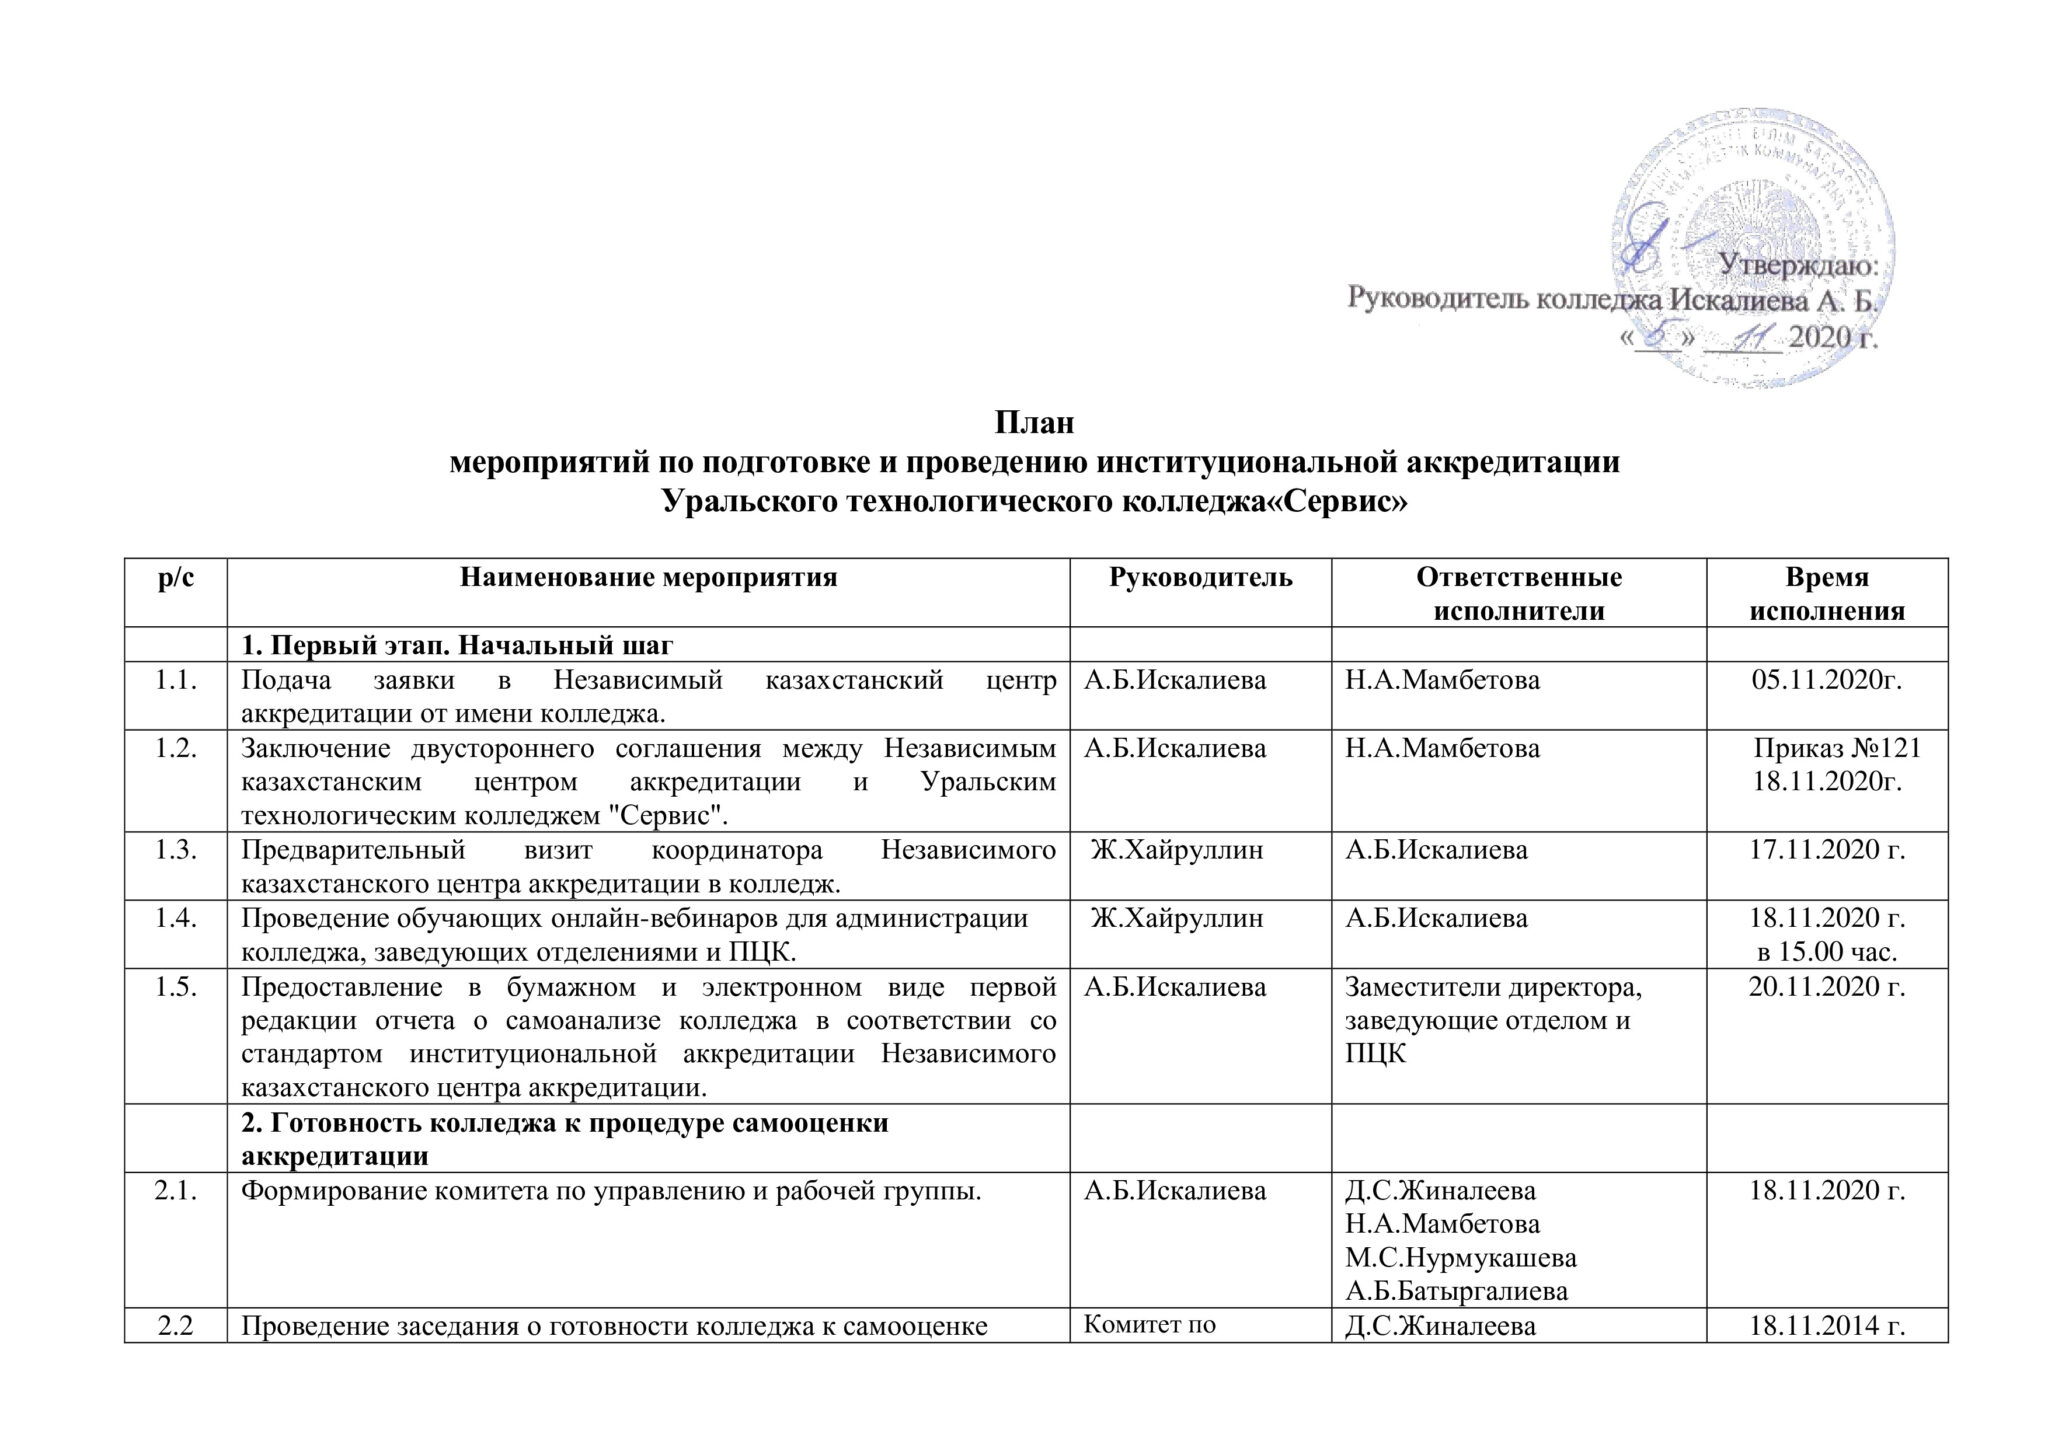 Мероприятия в Санкт-Петербурге план мероприятий плюсы и минусы